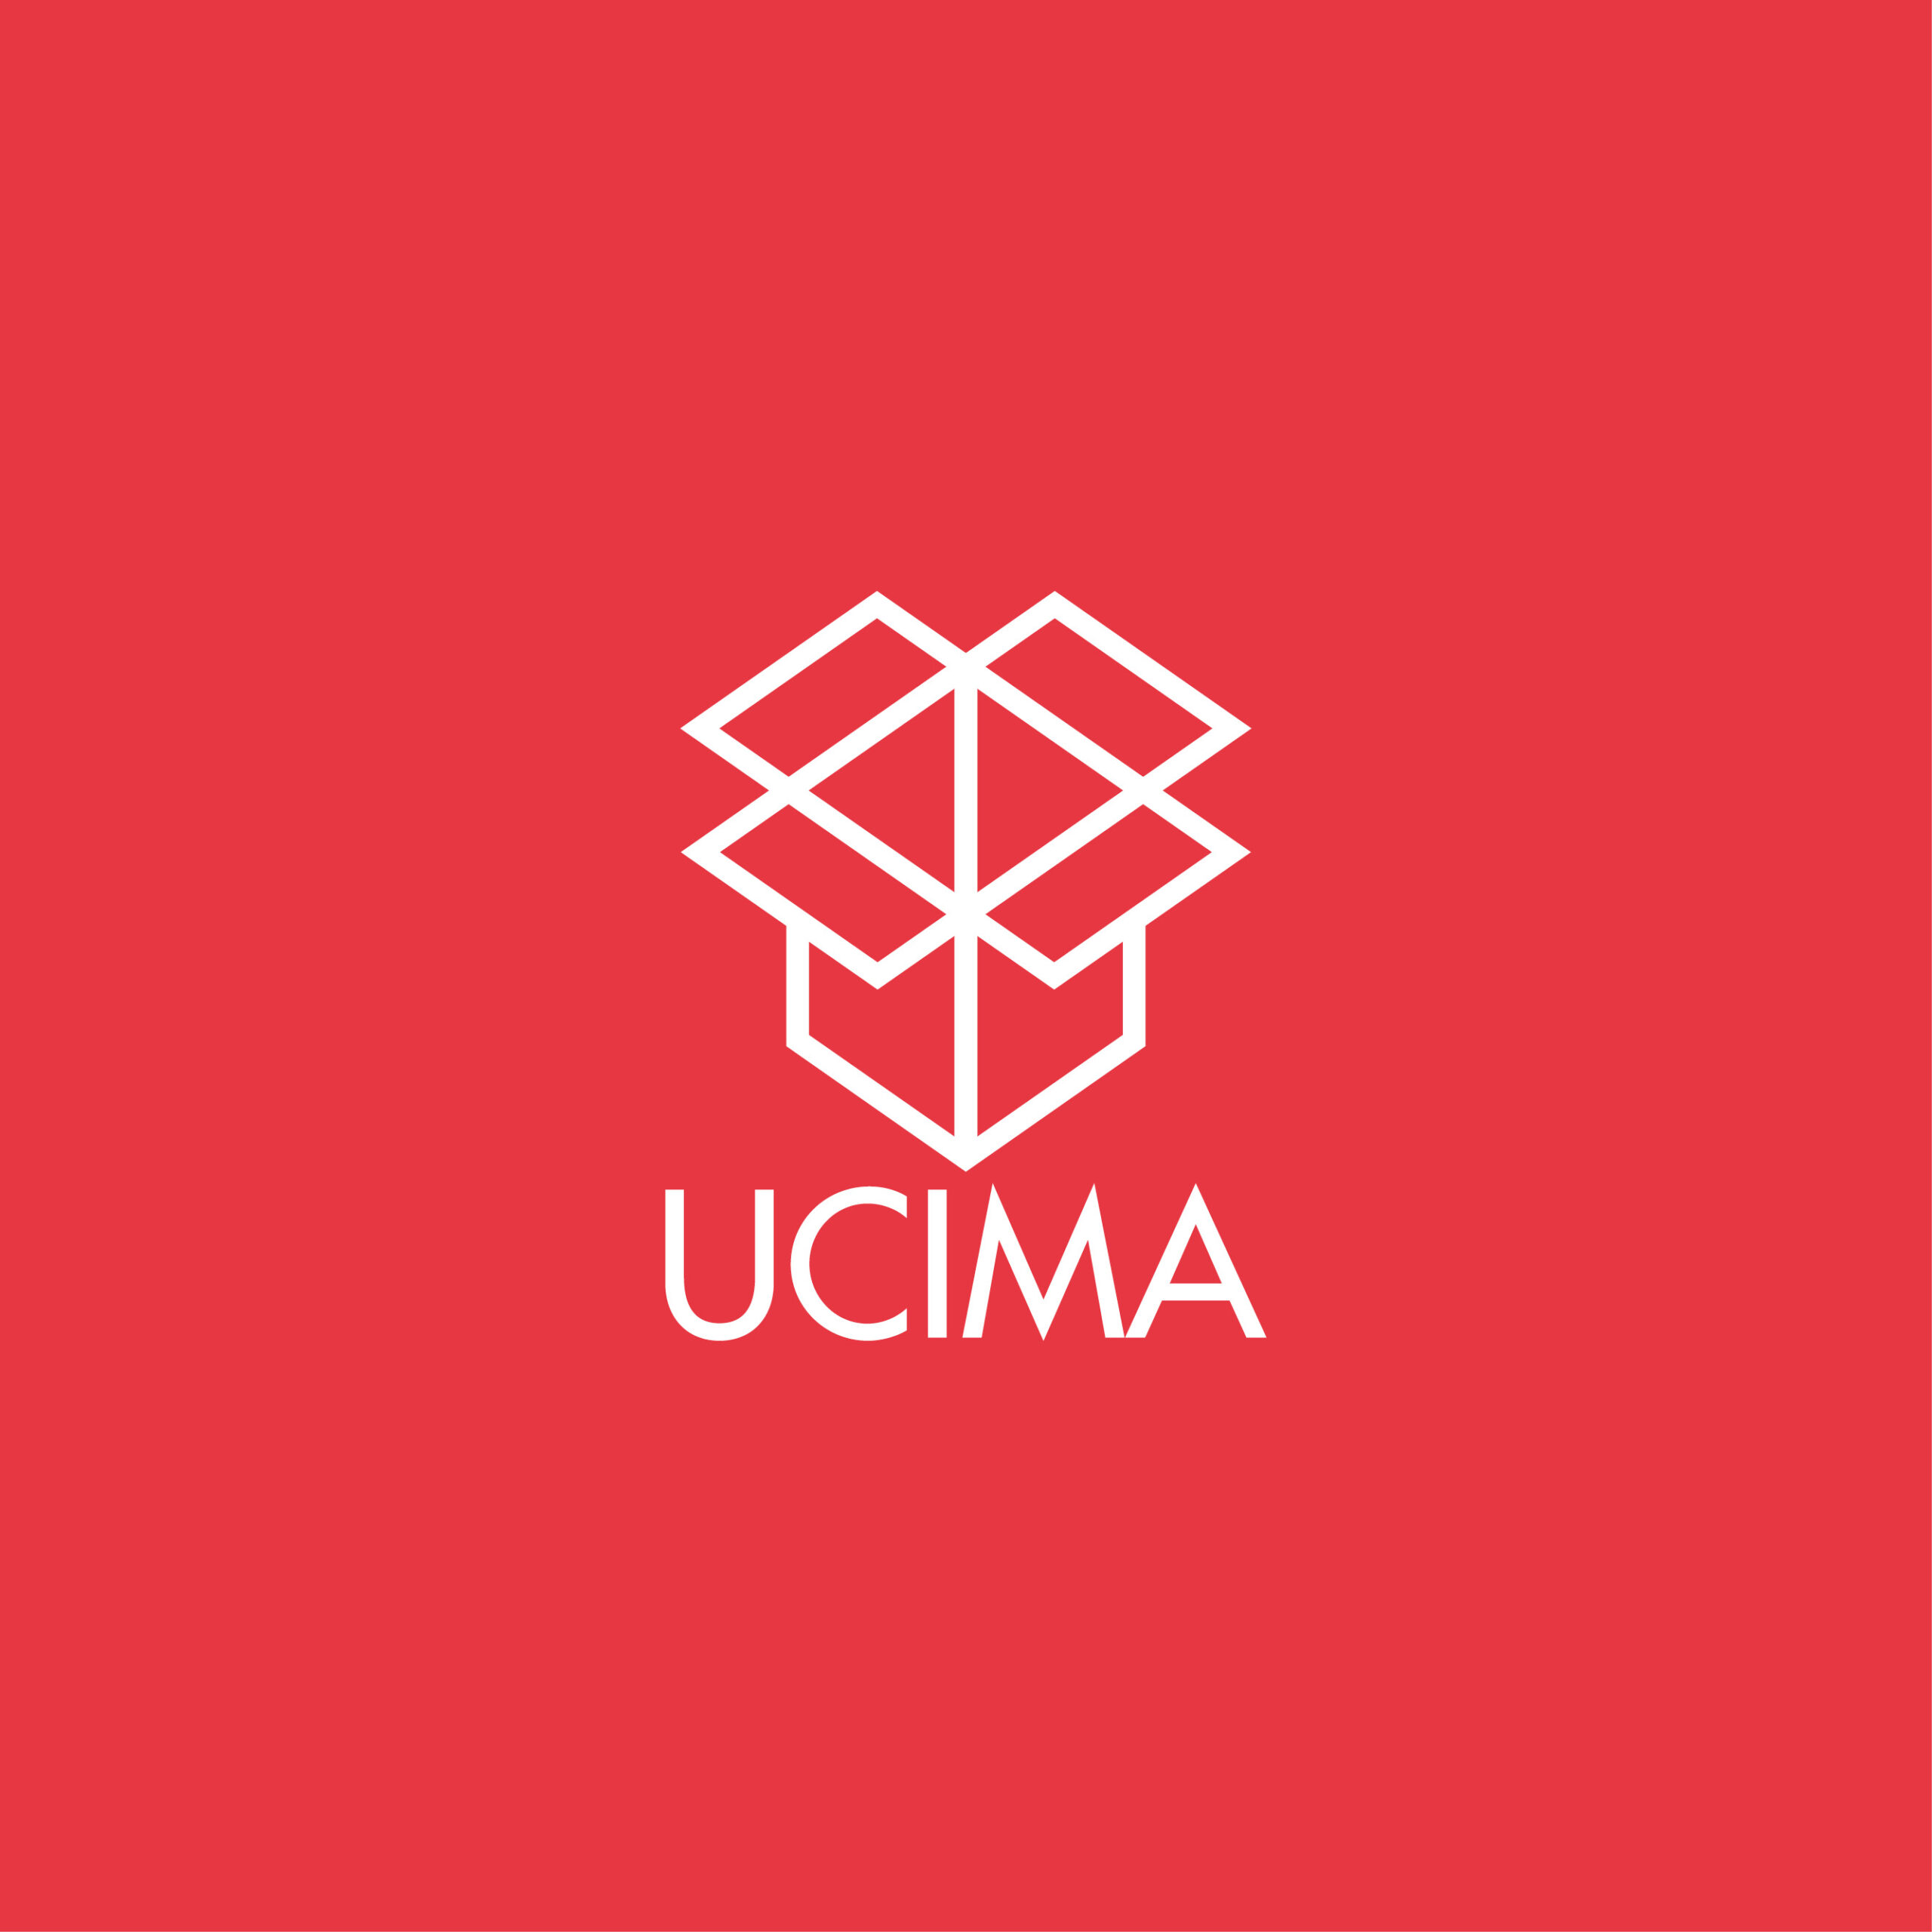 UCIMA / ACIMAC